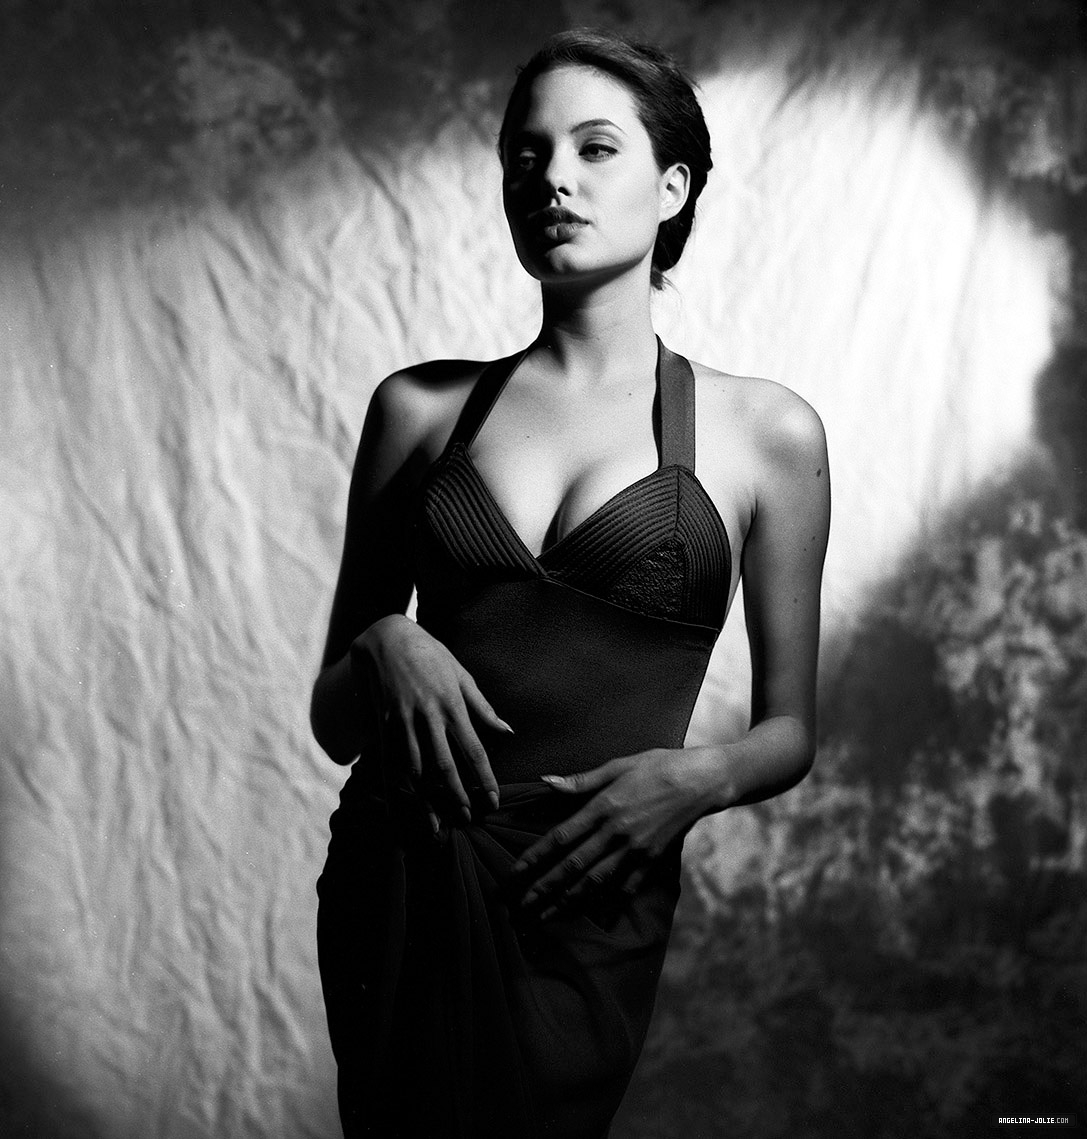 Идеальная фигура и изящный образ Анджелины Джоли на фото в купальнике